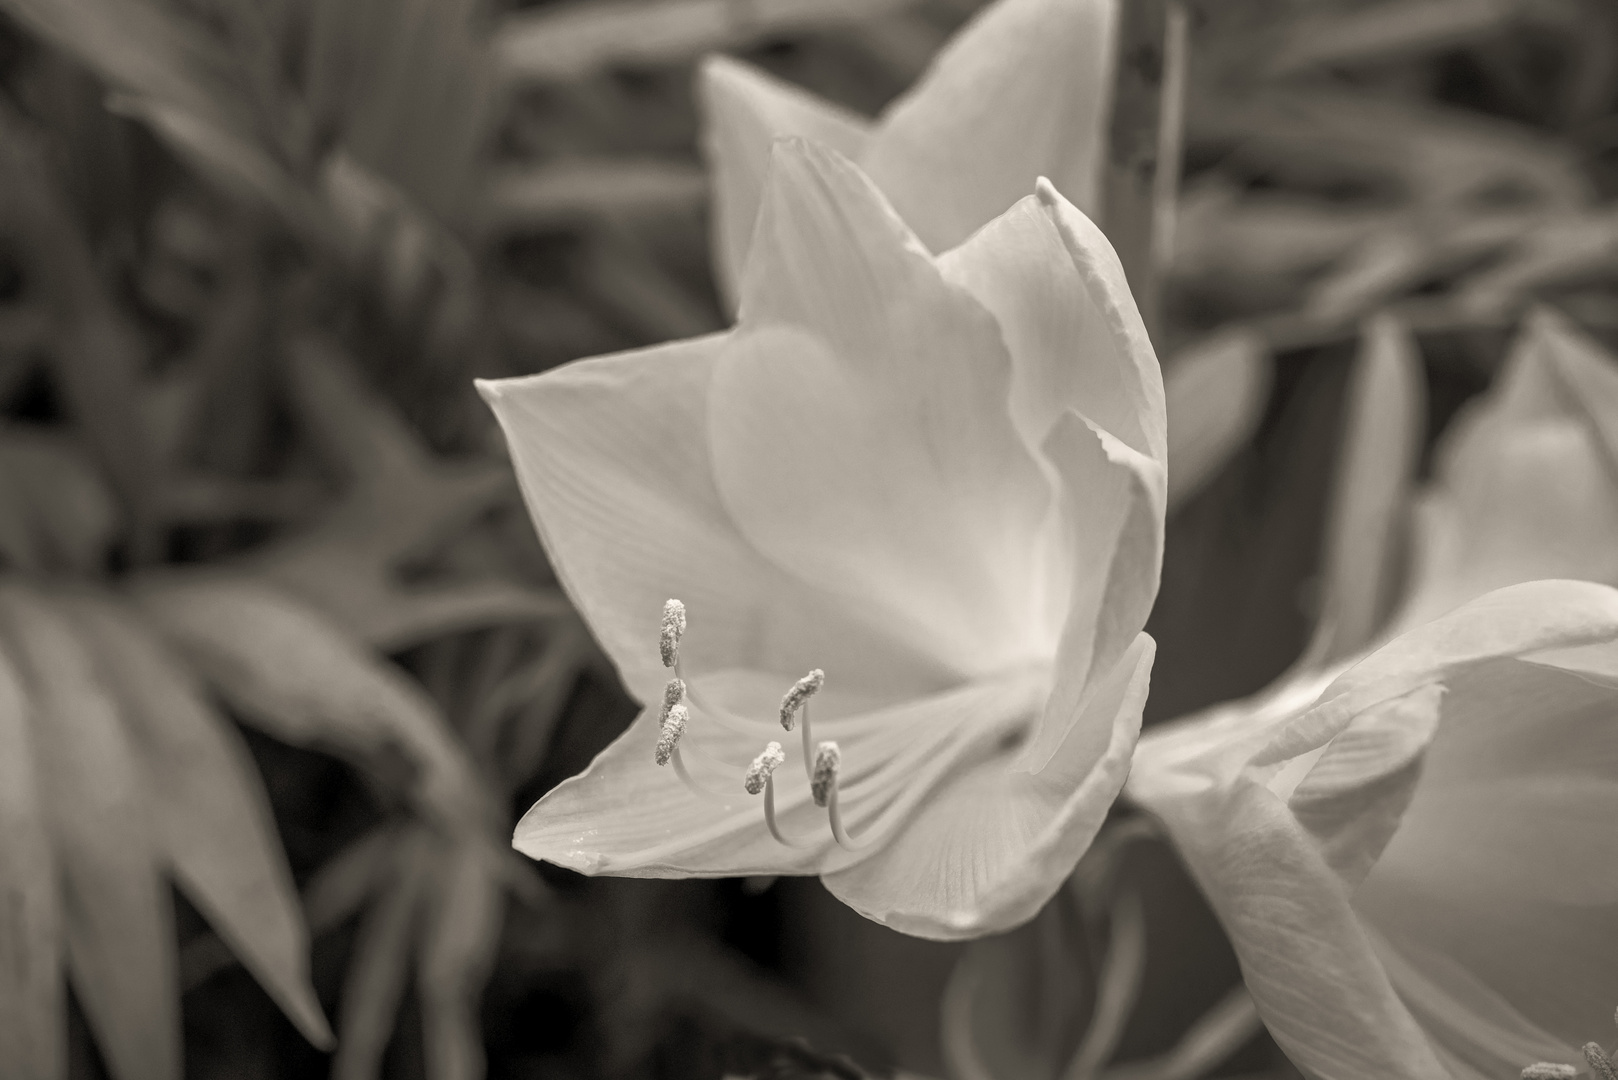 Weisser Blütentraum